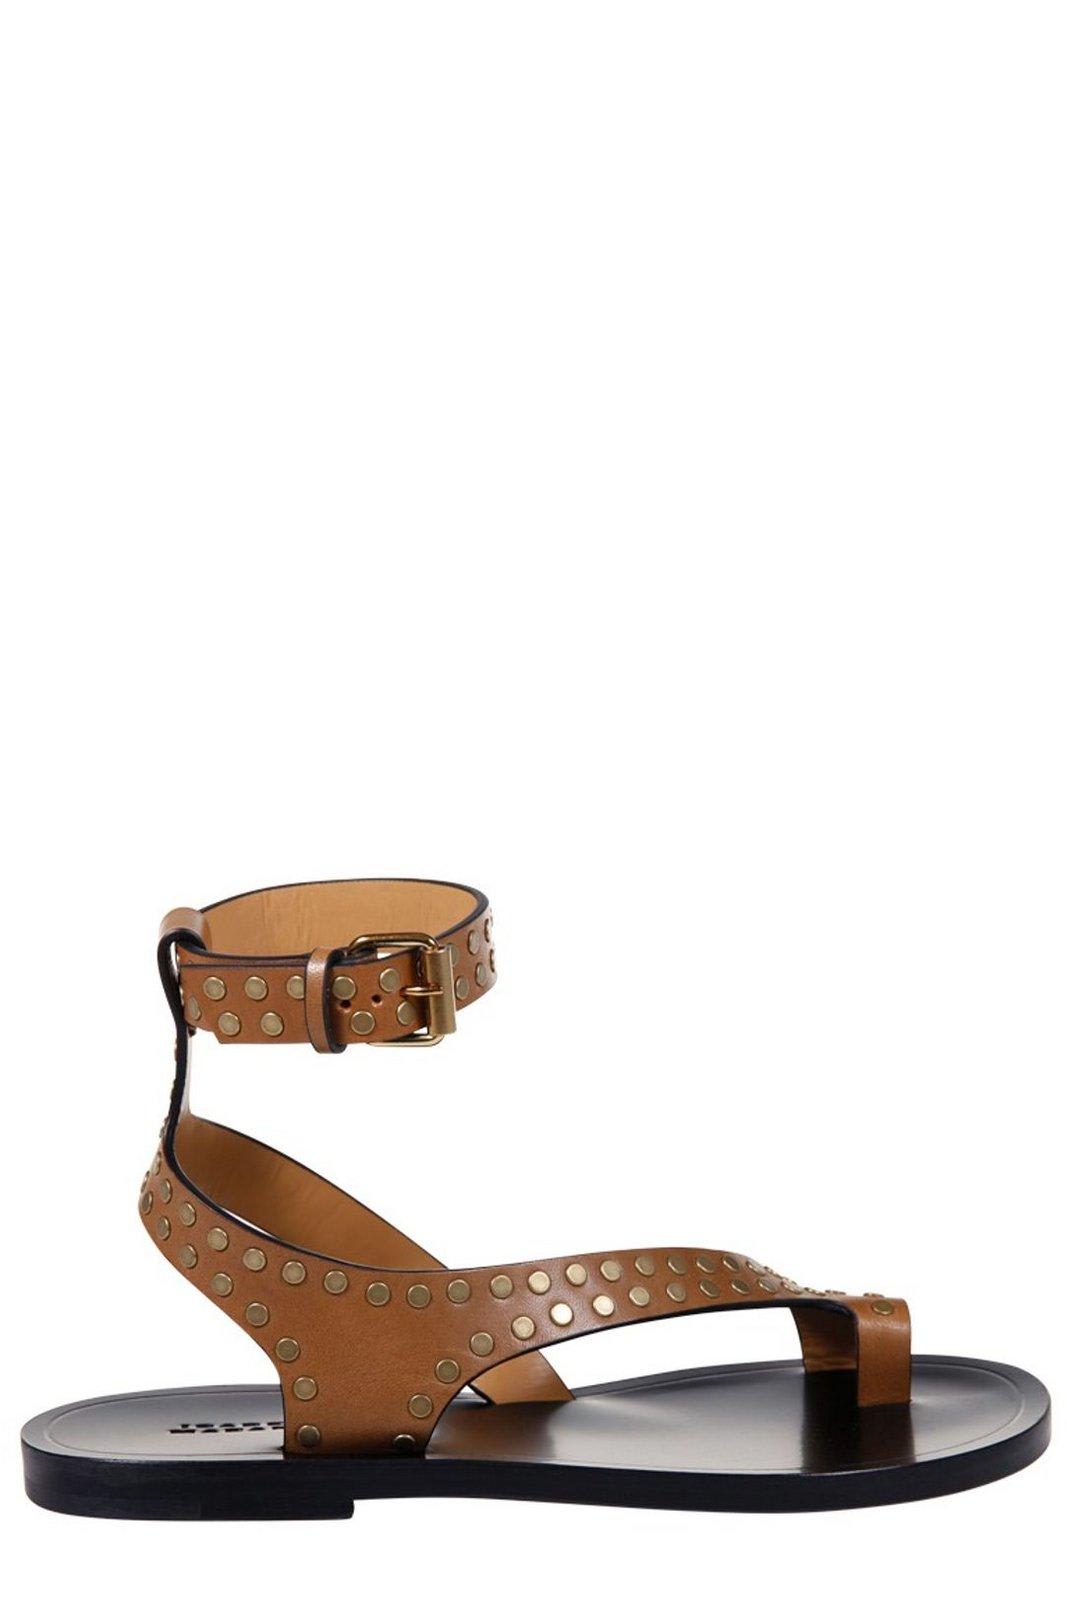 Shop Isabel Marant Jiona Stud-embellished Ankle Strapped Sandals